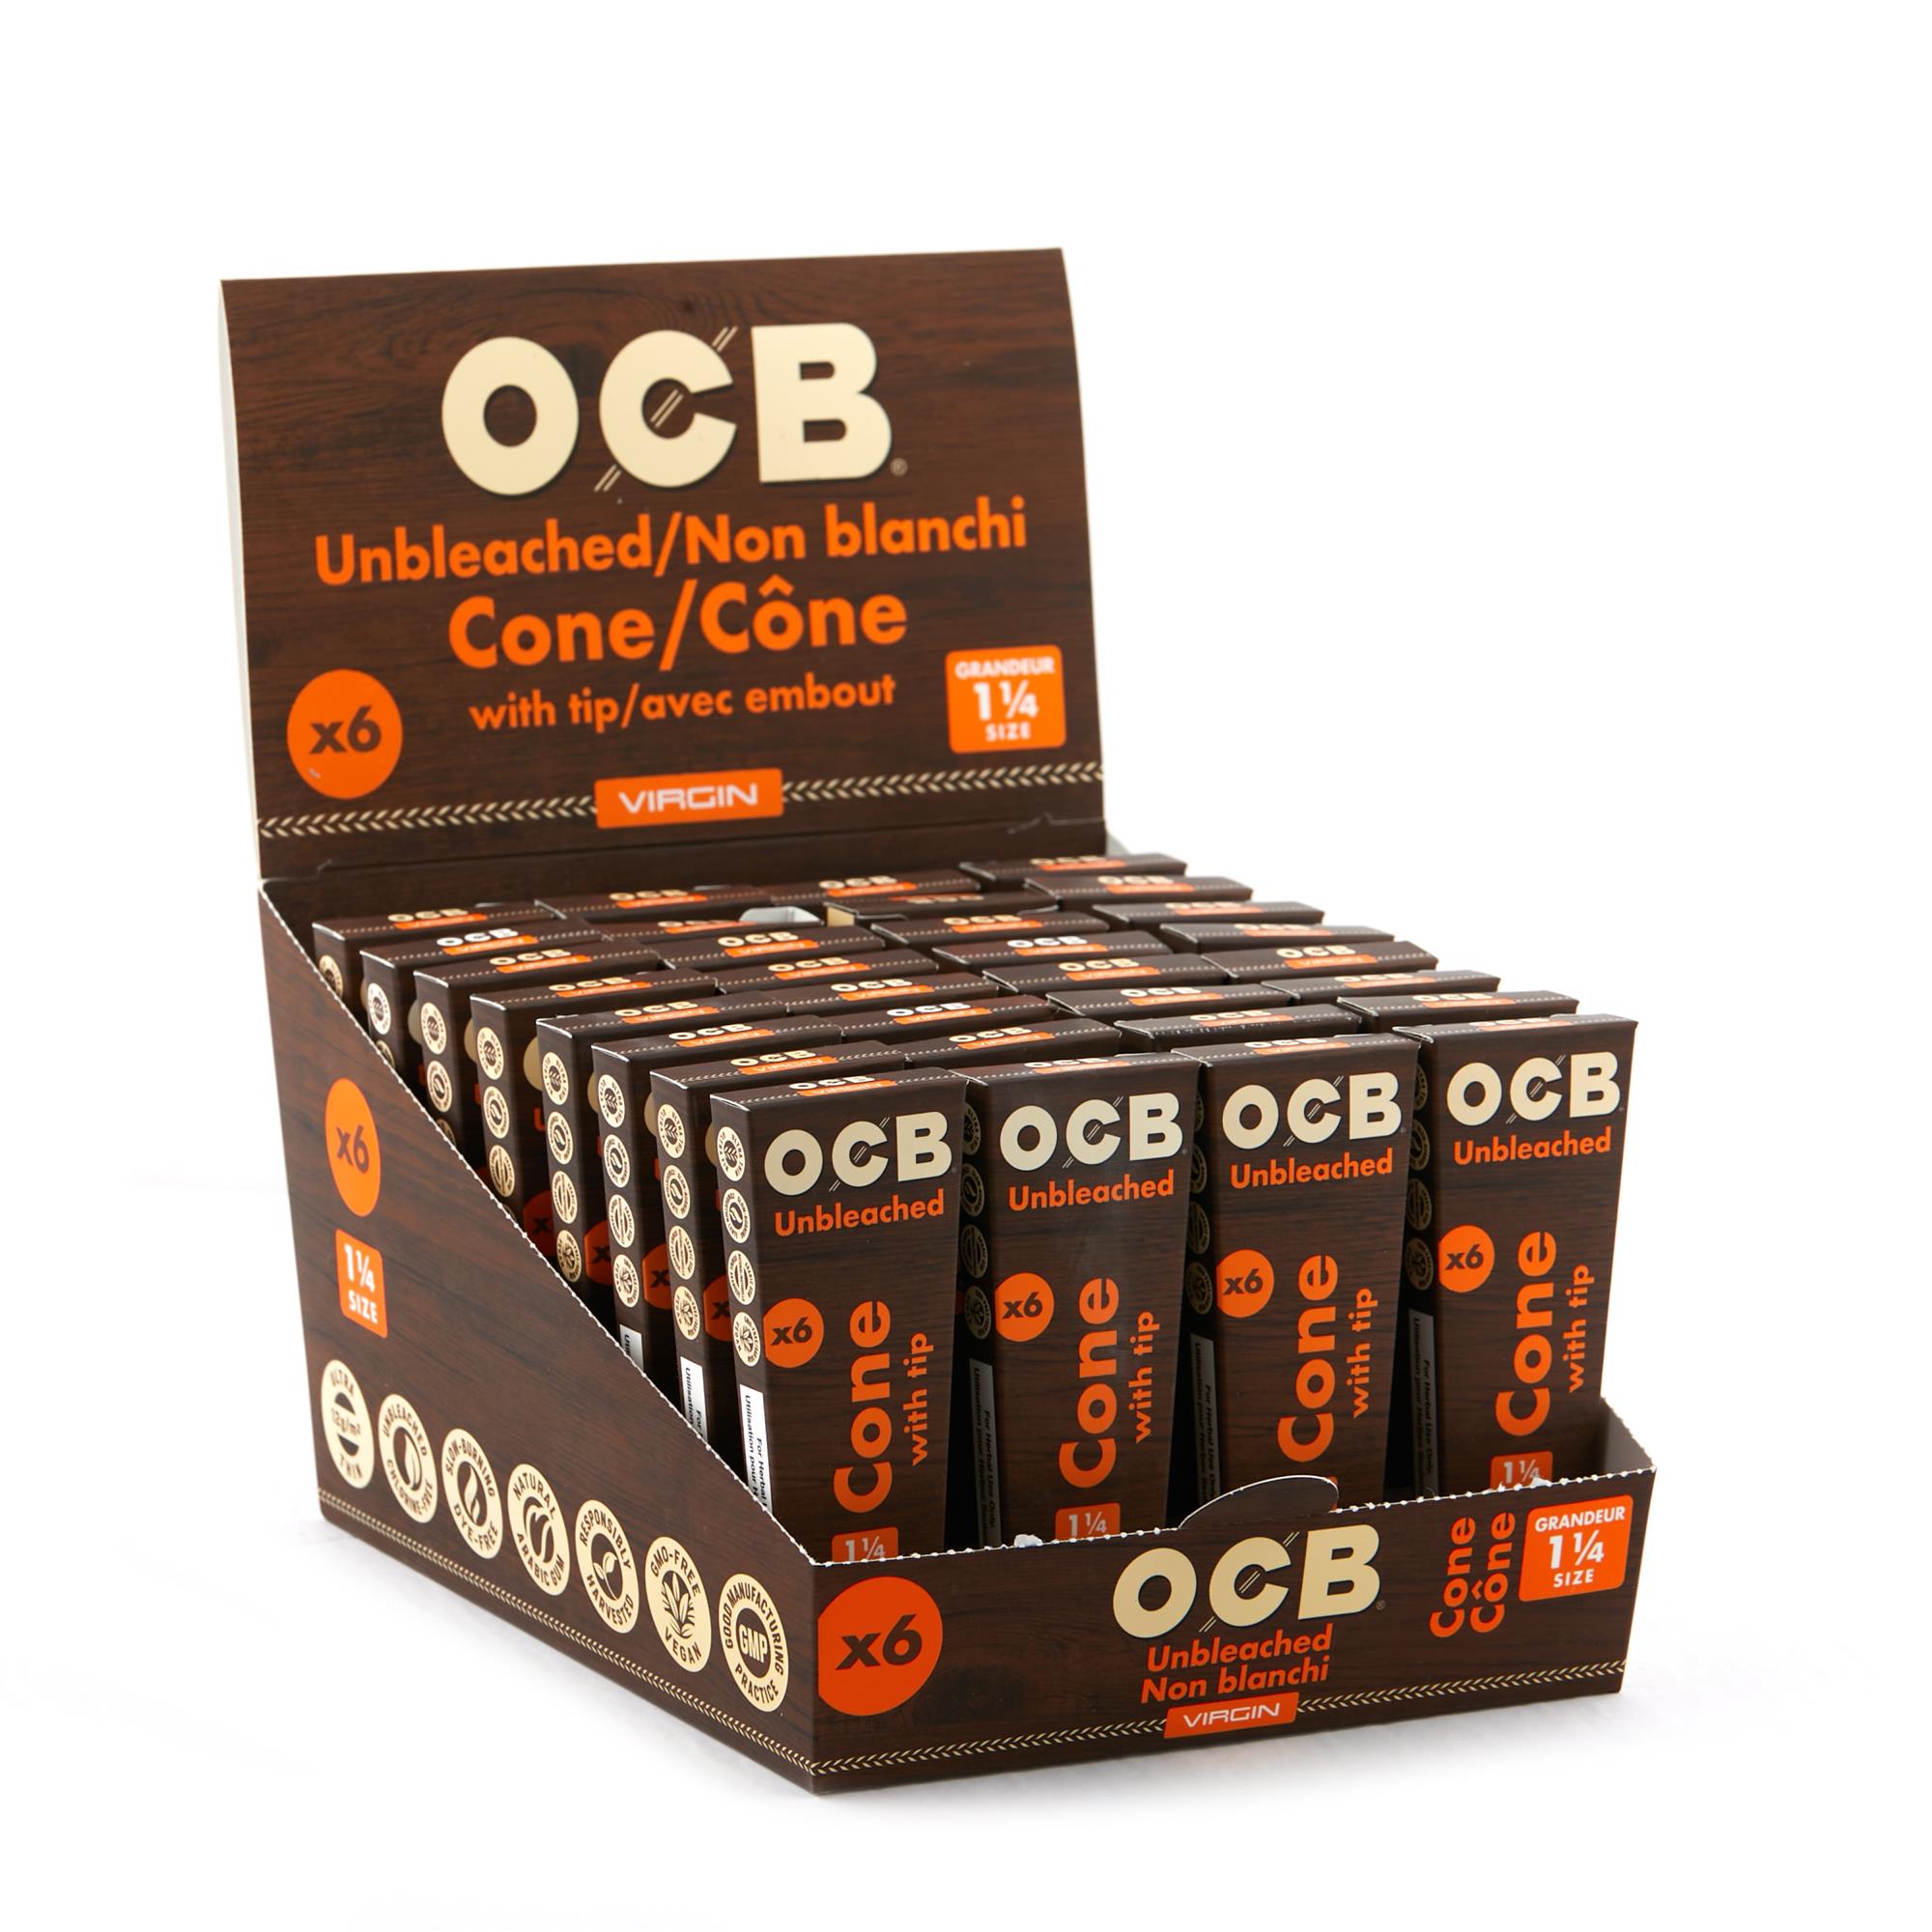 OCB VIRGIN UNBLEACHED 1/4 CONES 6 PACK